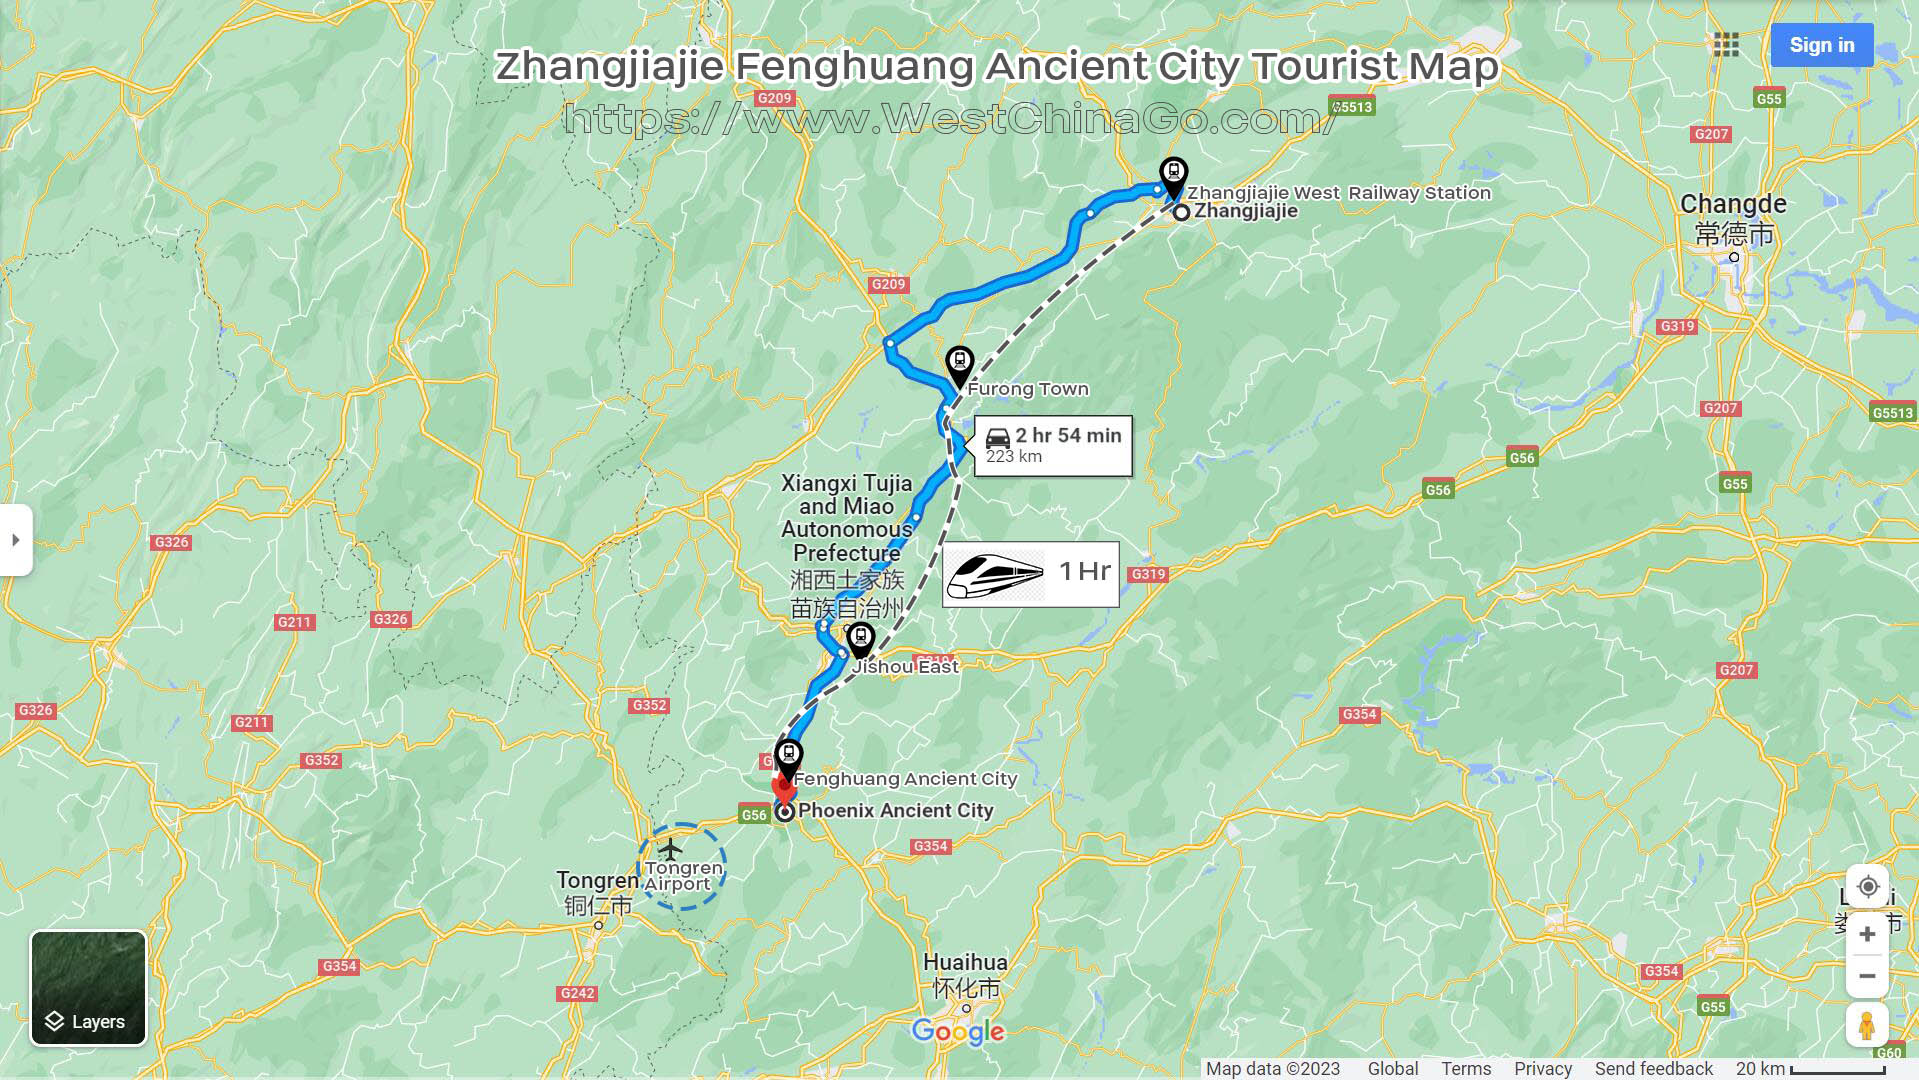 Zhangjiajie Fenghuang Ancient City Tourist Map